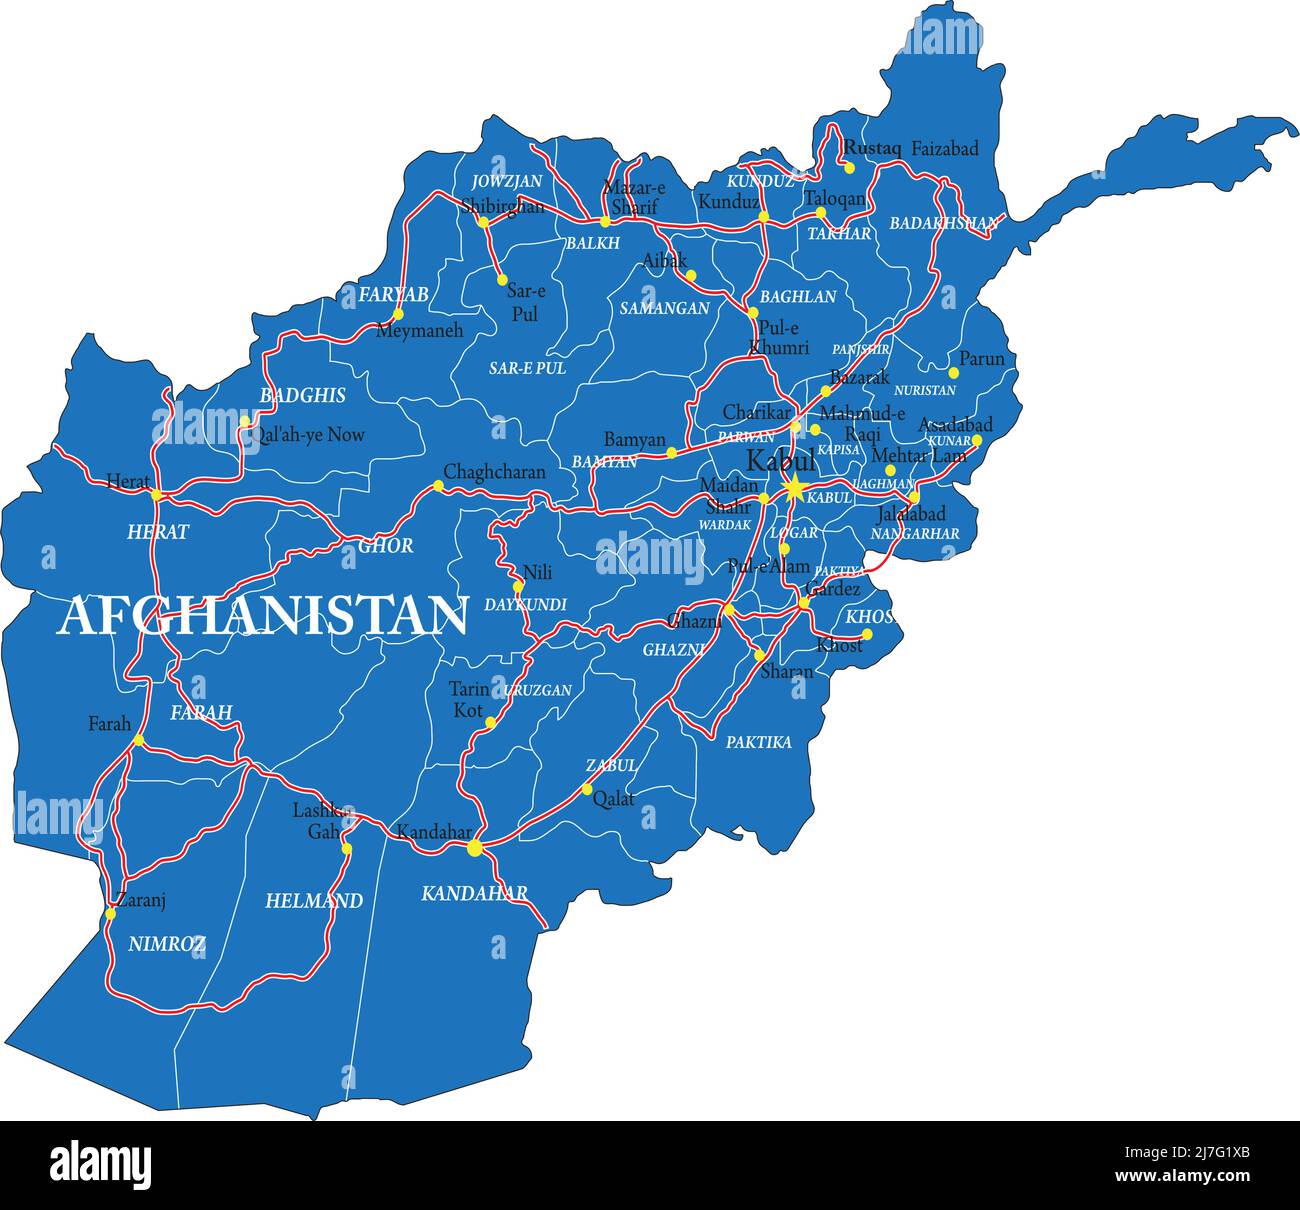 Mappa vettoriale altamente dettagliata dell'Afghanistan con regioni, città e strade principali. Illustrazione Vettoriale